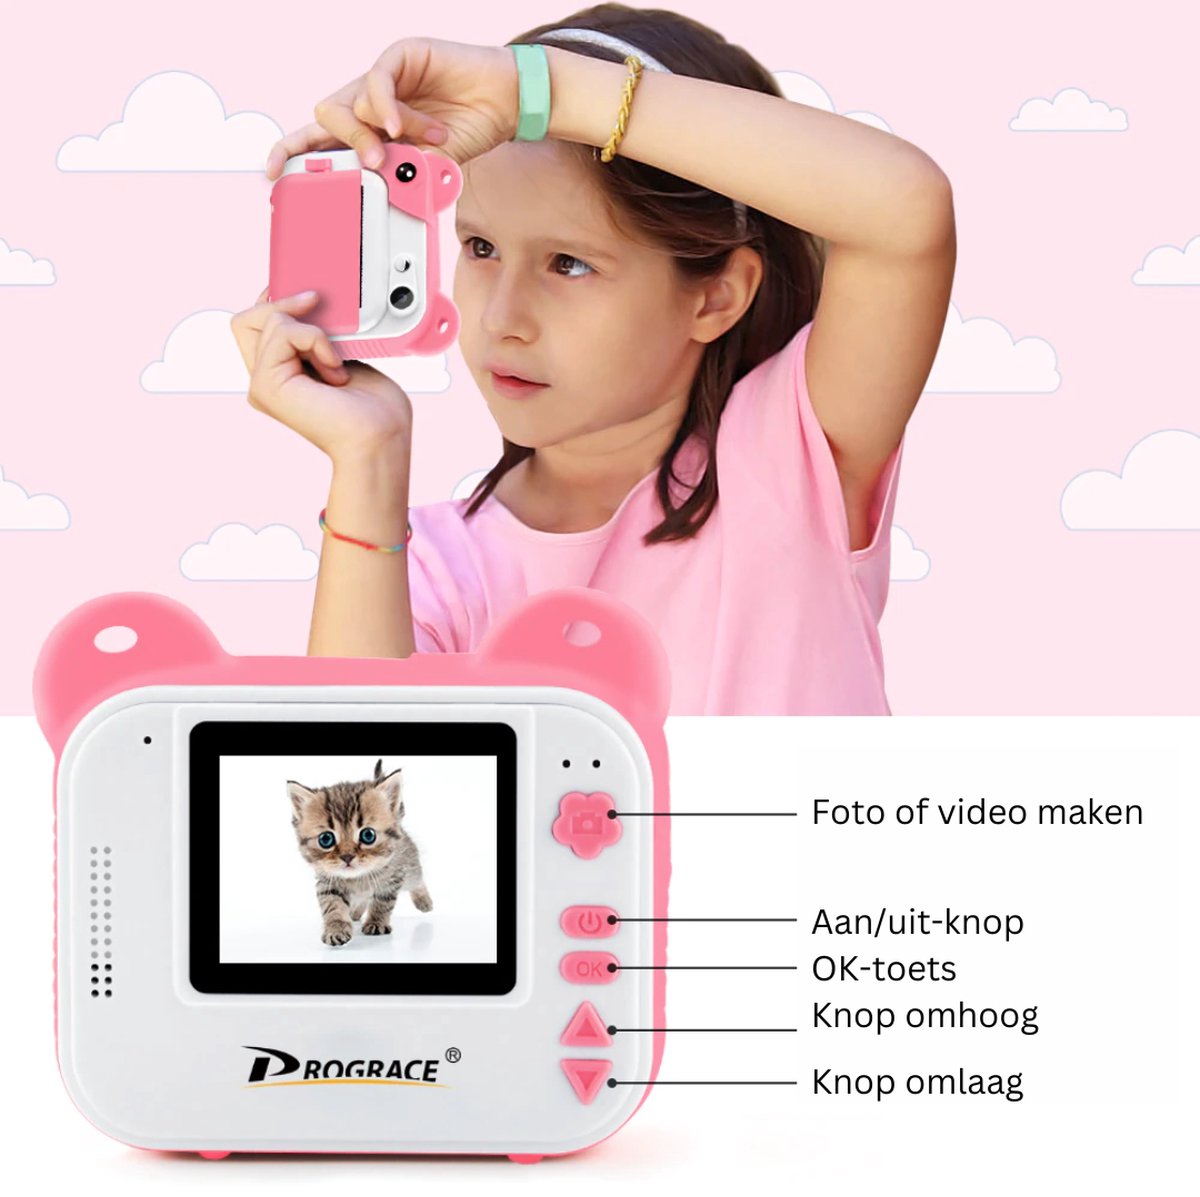 Appareil photo photo Novoz Enfants - Polaroid - Garçons et Filles - Image  nette - Photos et vidéos - Jeux inclus - 32 GB